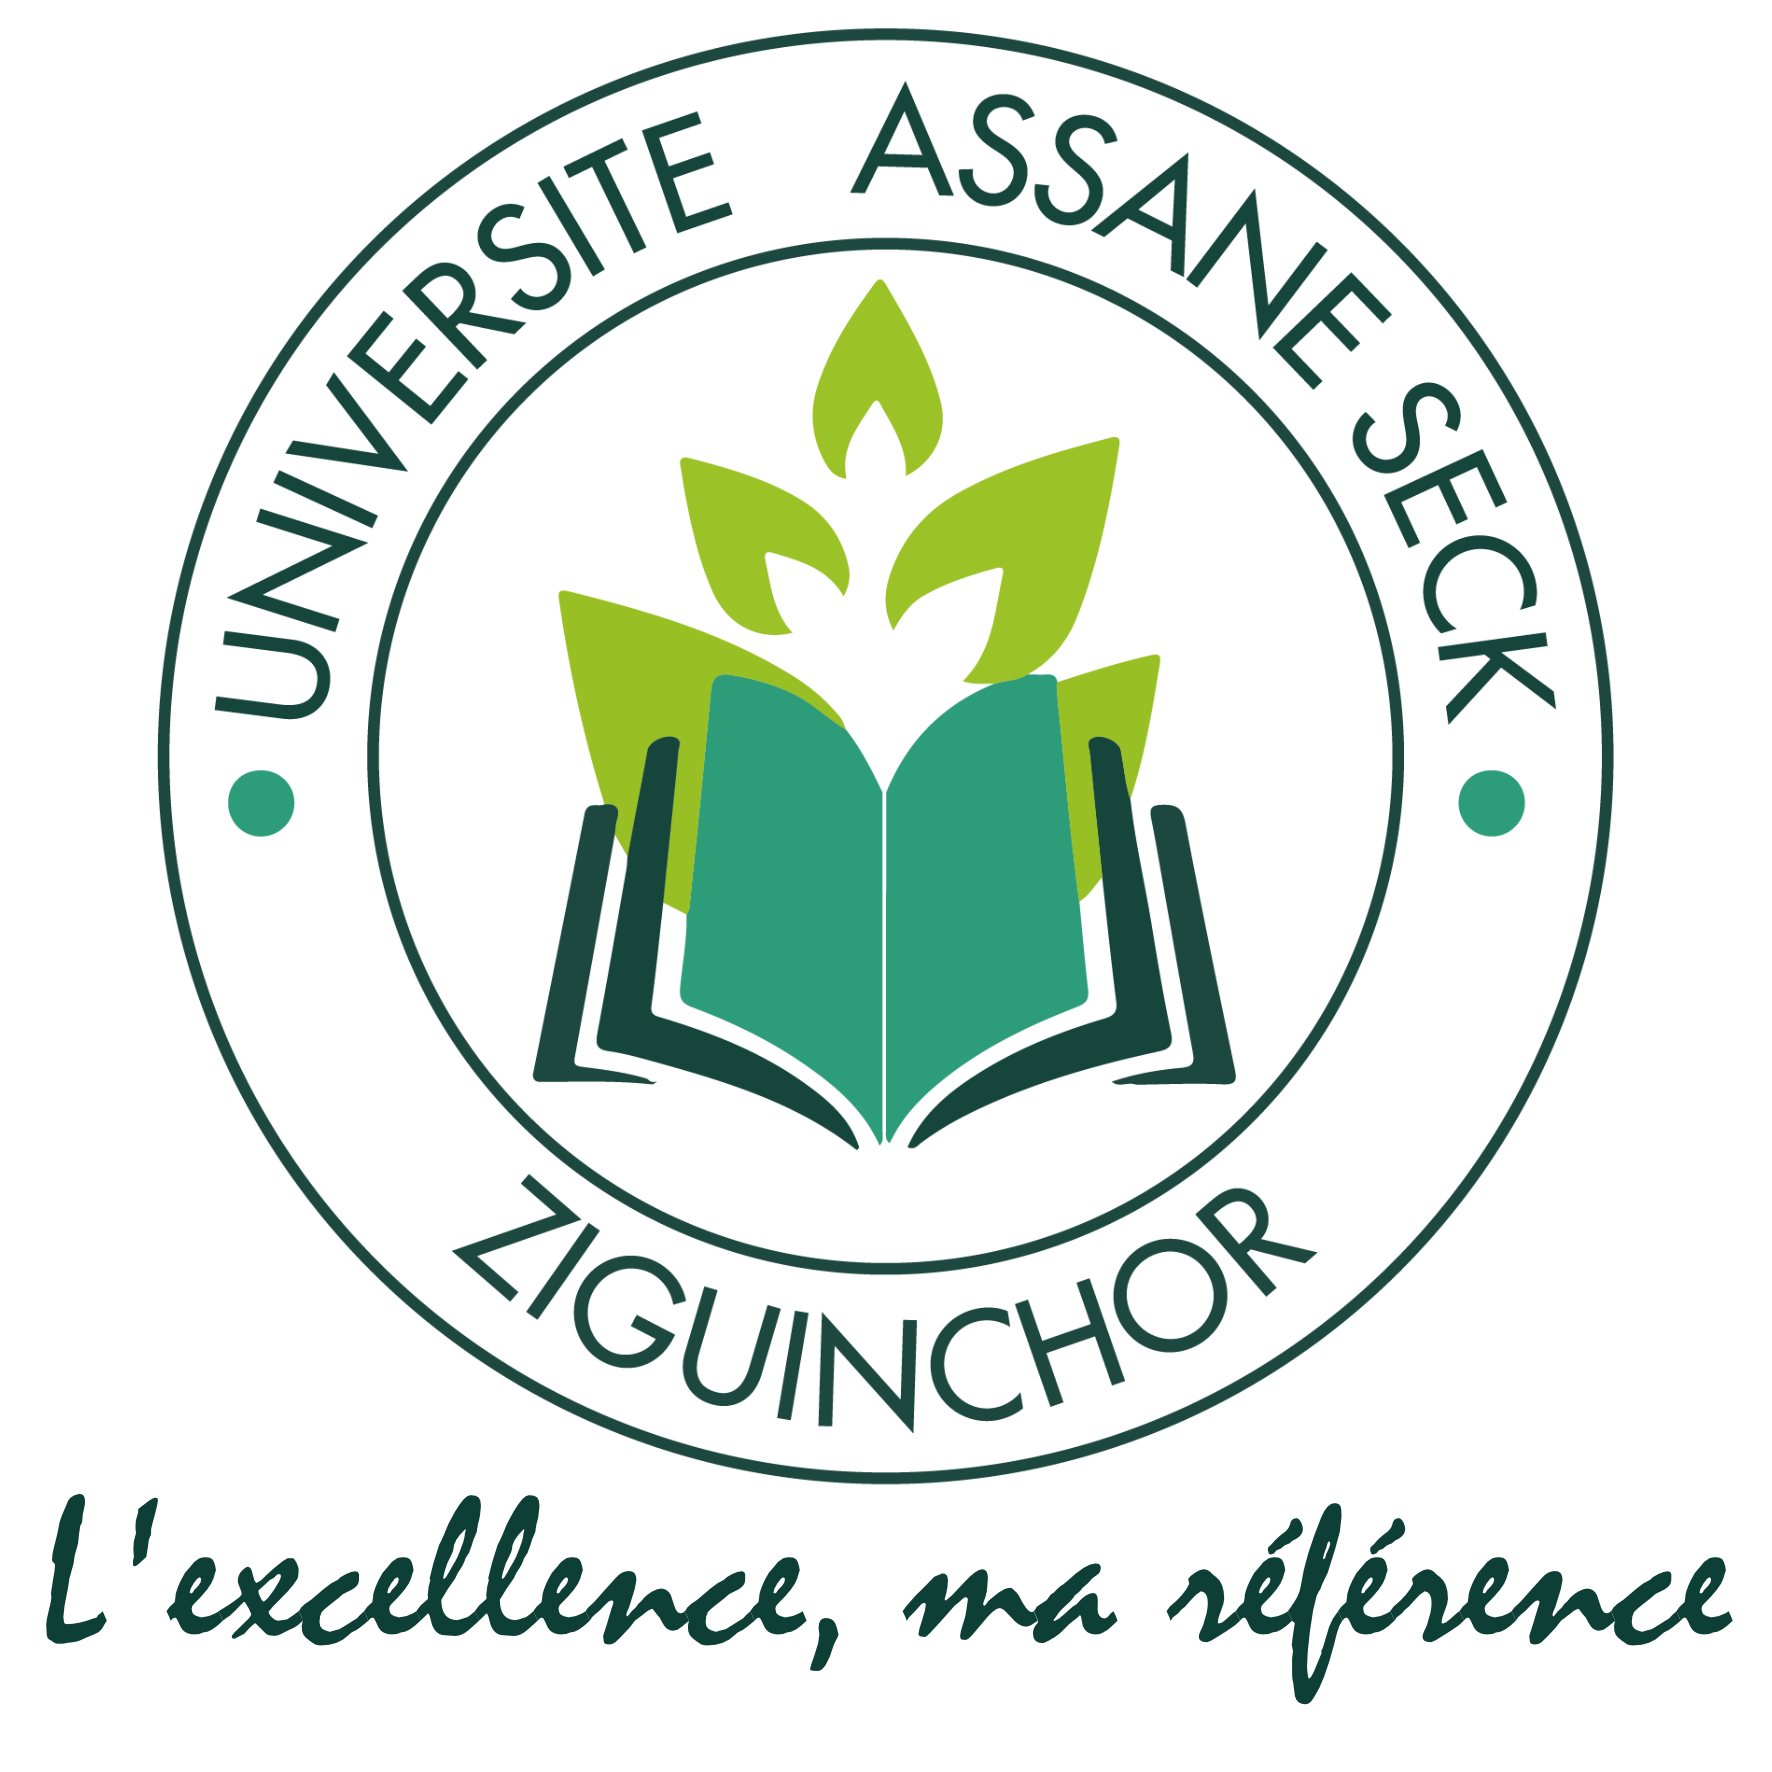 Candidature au Master Sciences de l’Atmosphère et de l’Océan (SAO) | Université Assane Seck de Ziguinchor